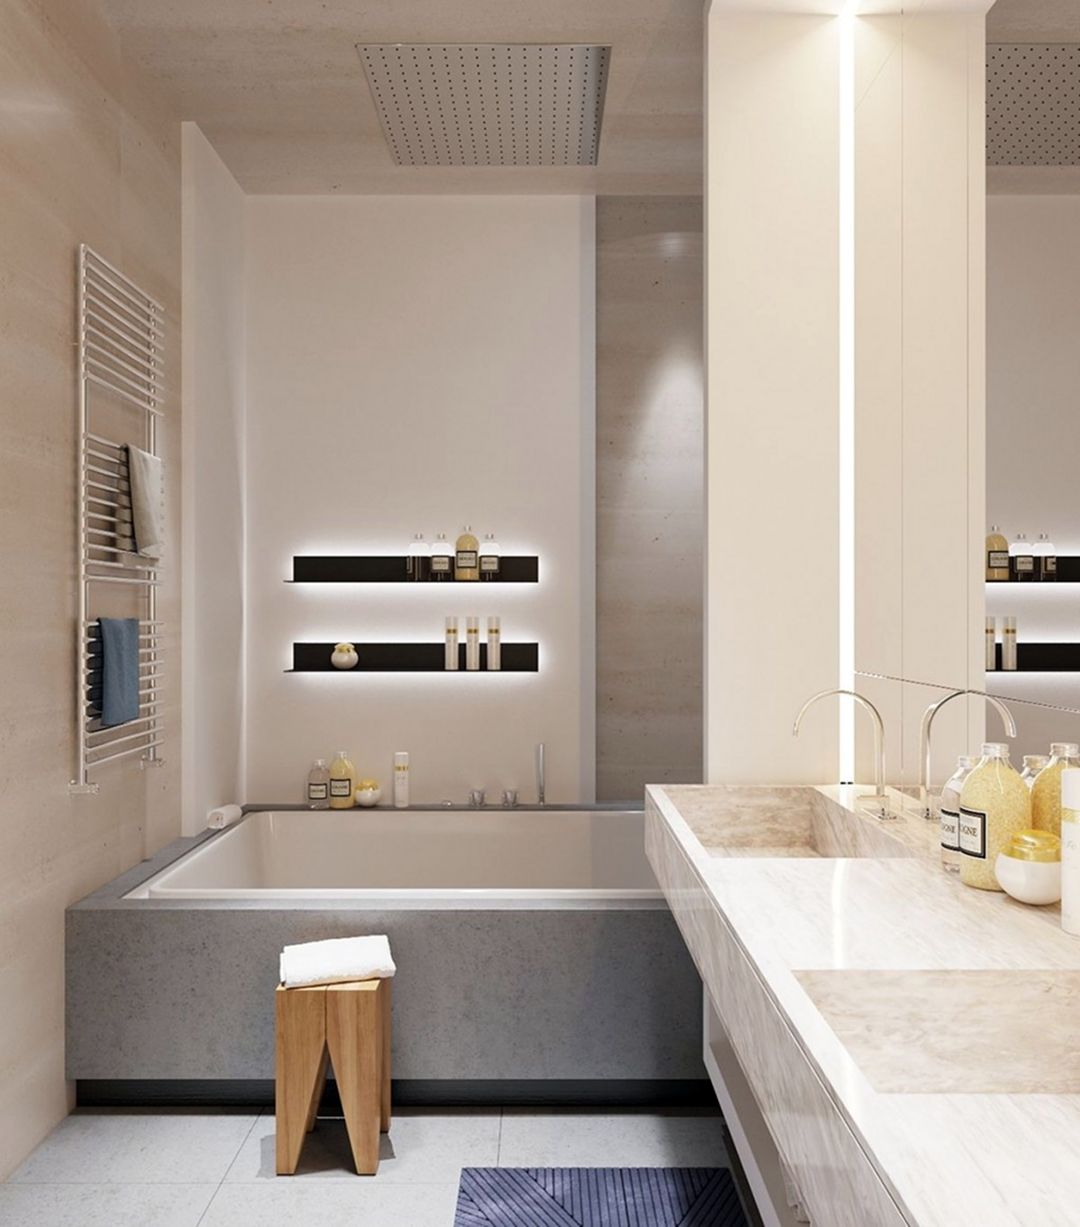 Minimalist Bathroom Lamps Design Ideas